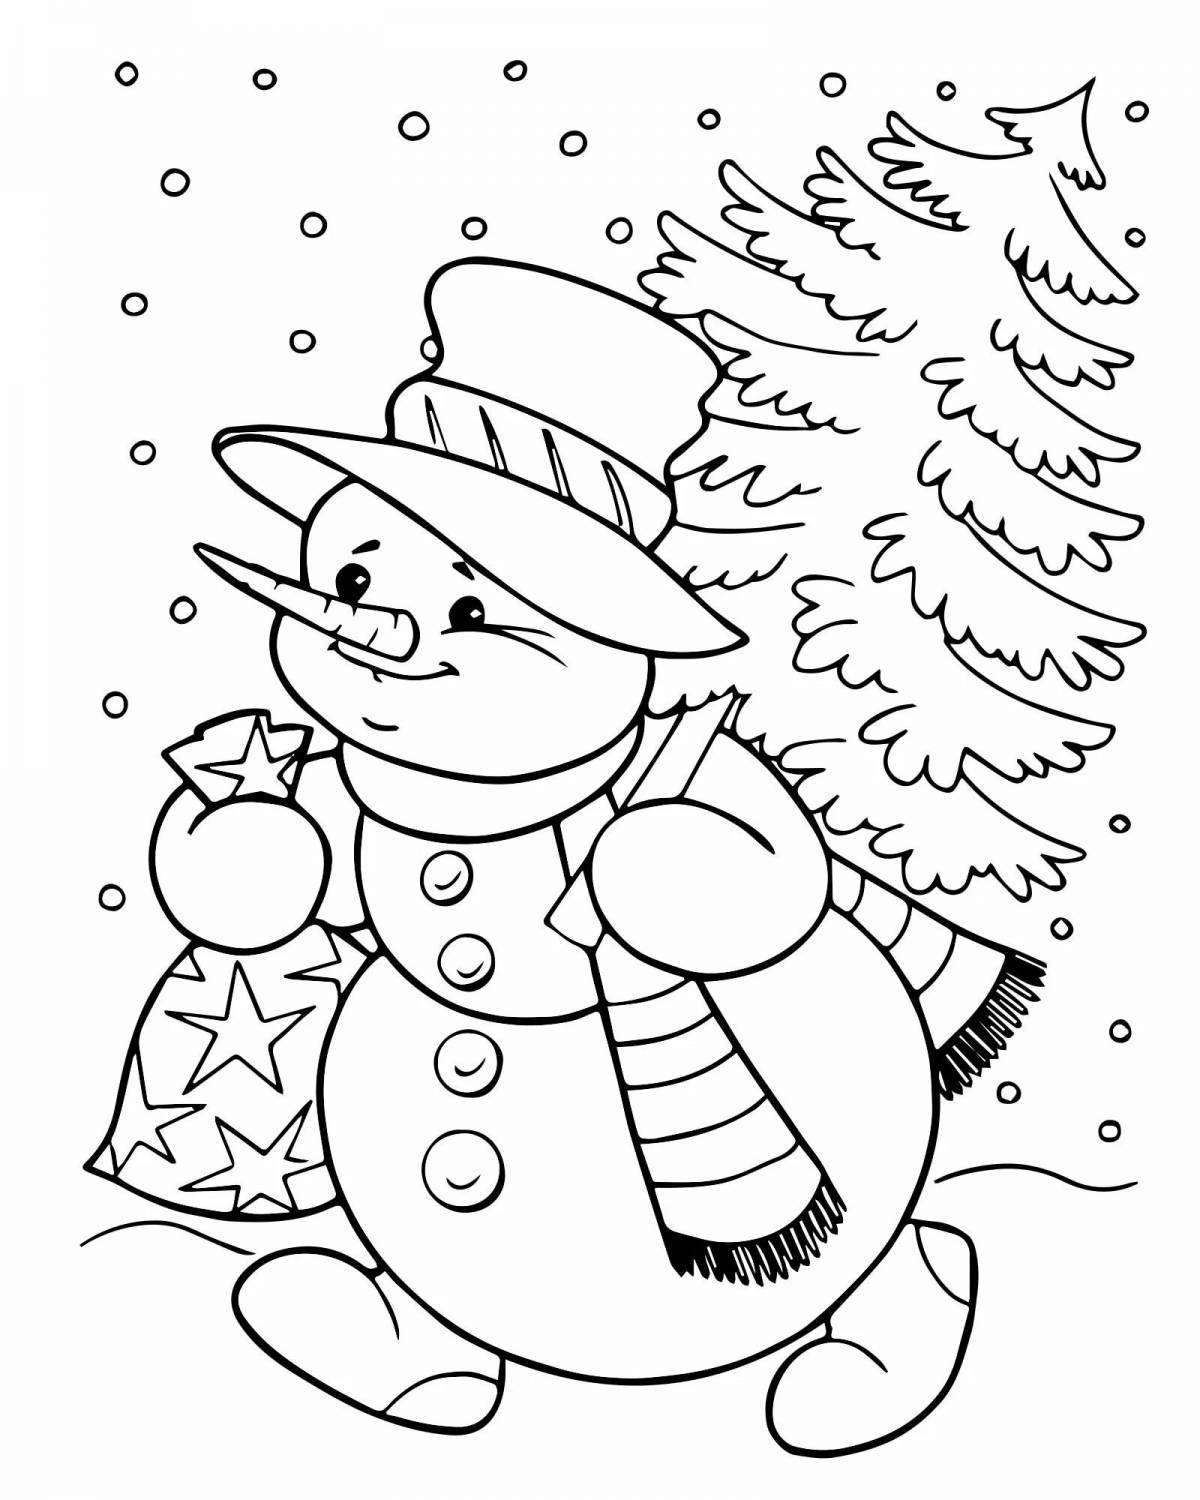 Herringbone and snowman #3